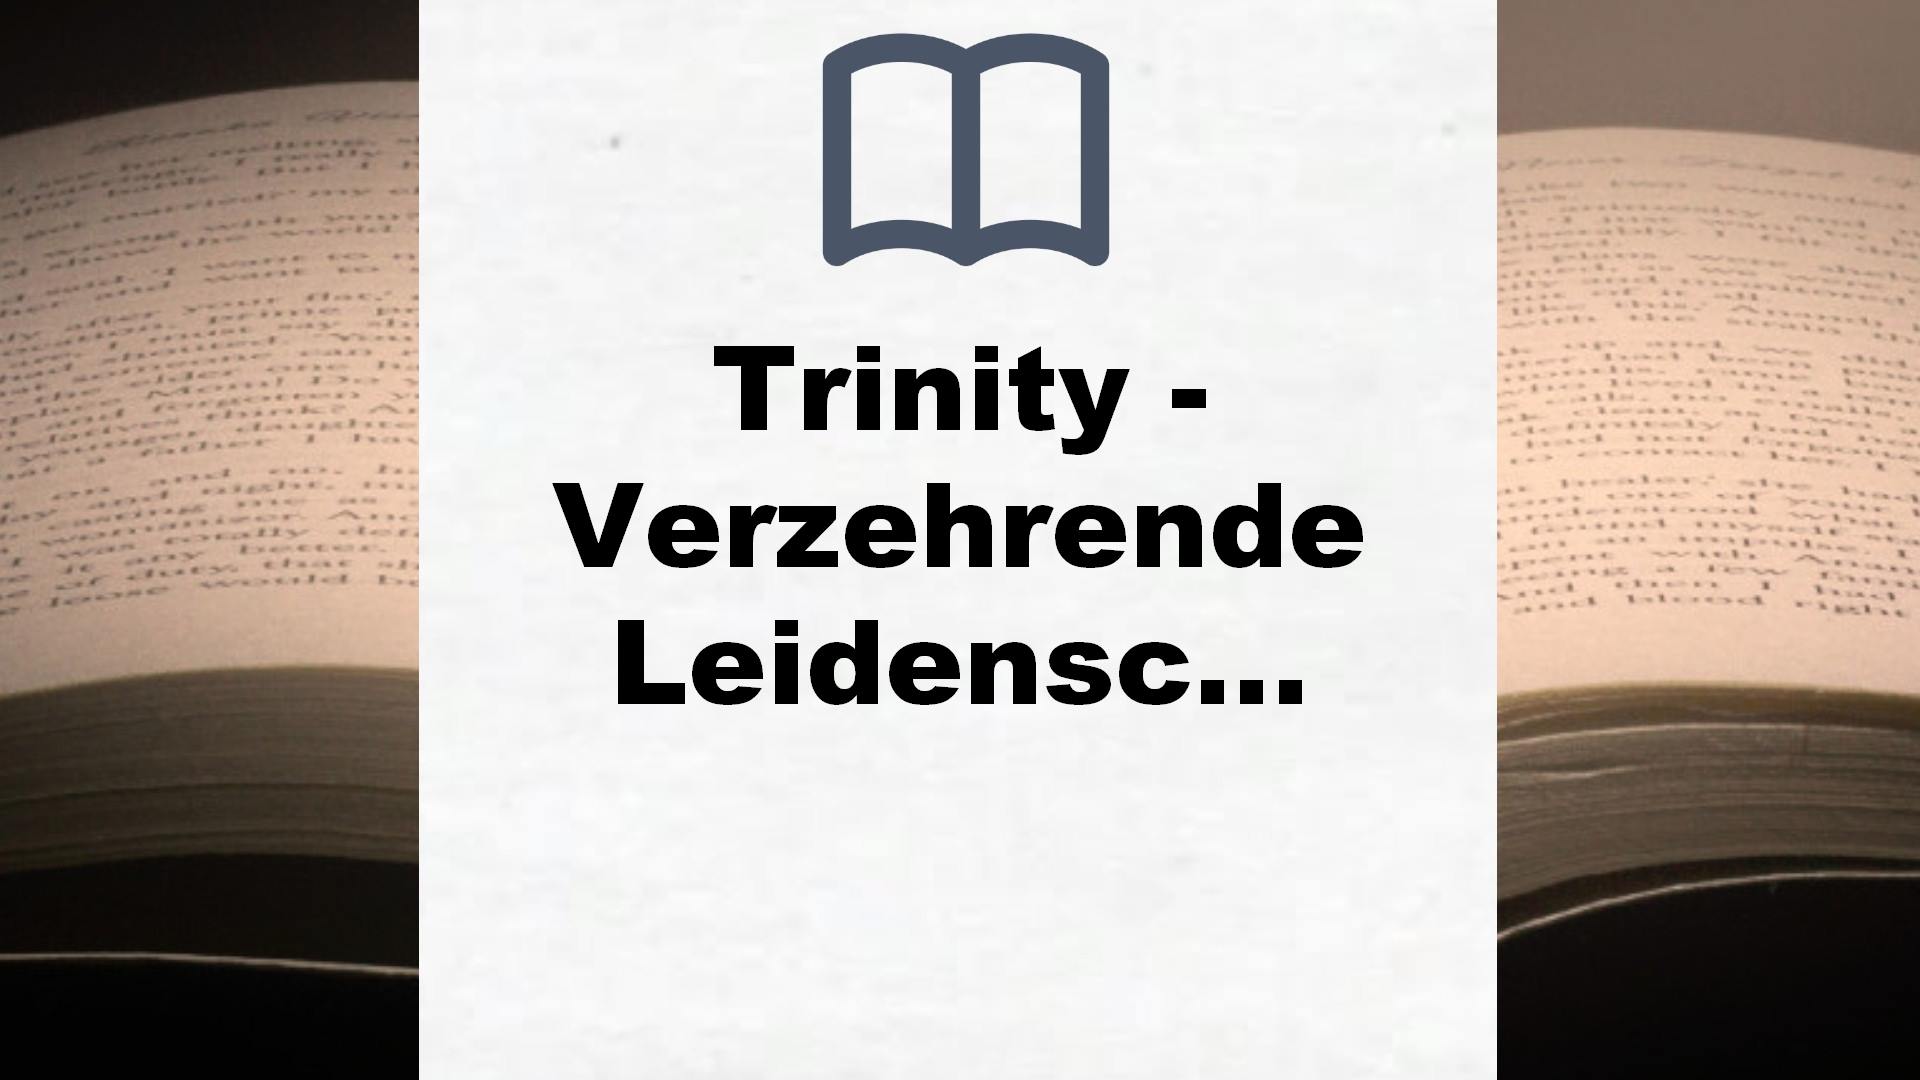 Trinity – Verzehrende Leidenschaft: Ein neues Leben. Eine große Liebe. Eine tödliche Gefahr. Der erste Band der Trinity-Serie der Erfolgsautorin (Die Trinity-Serie, Band 1) – Buchrezension